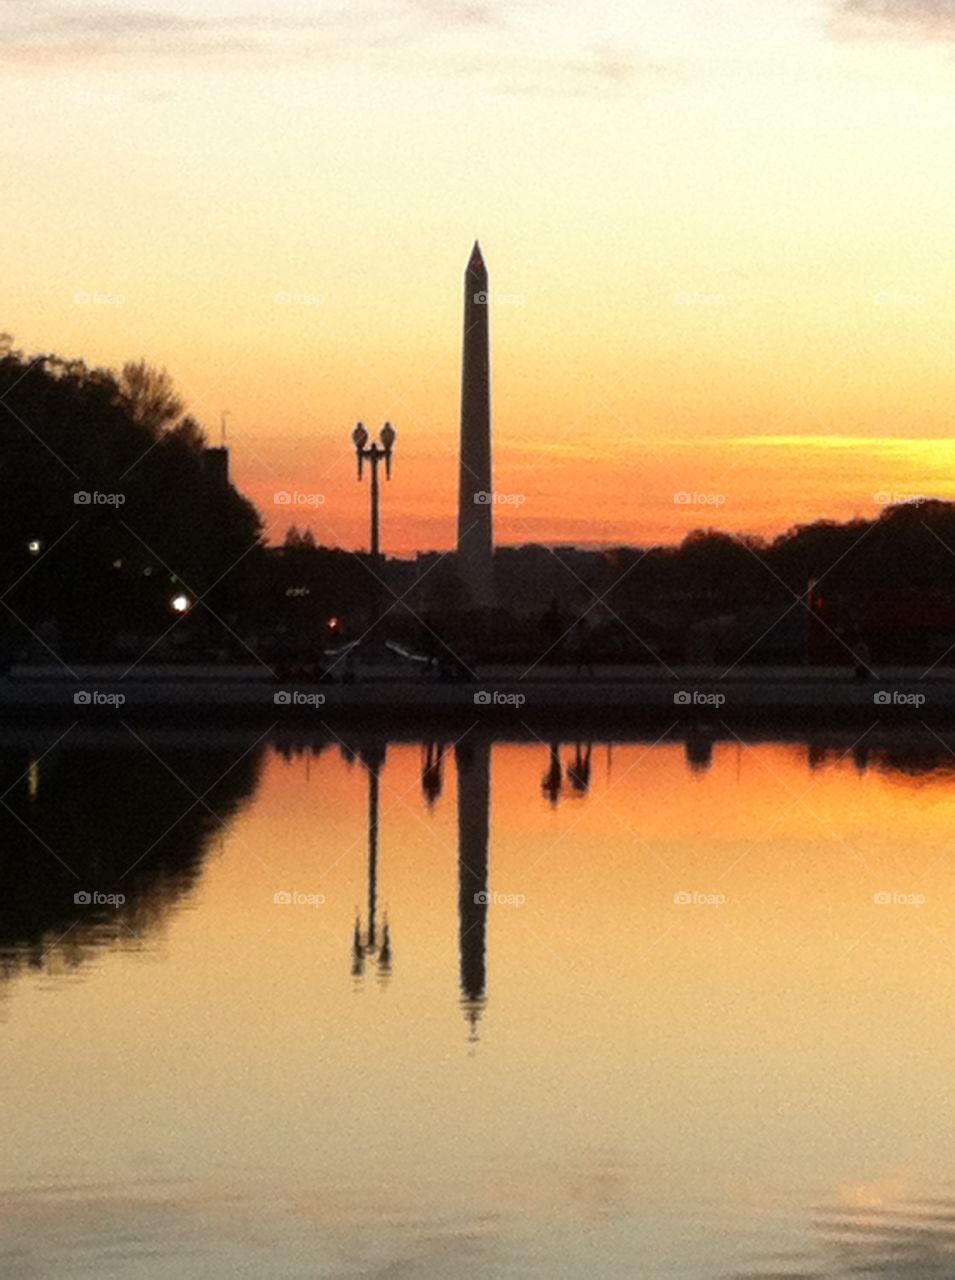 The Washington monument at sunset 